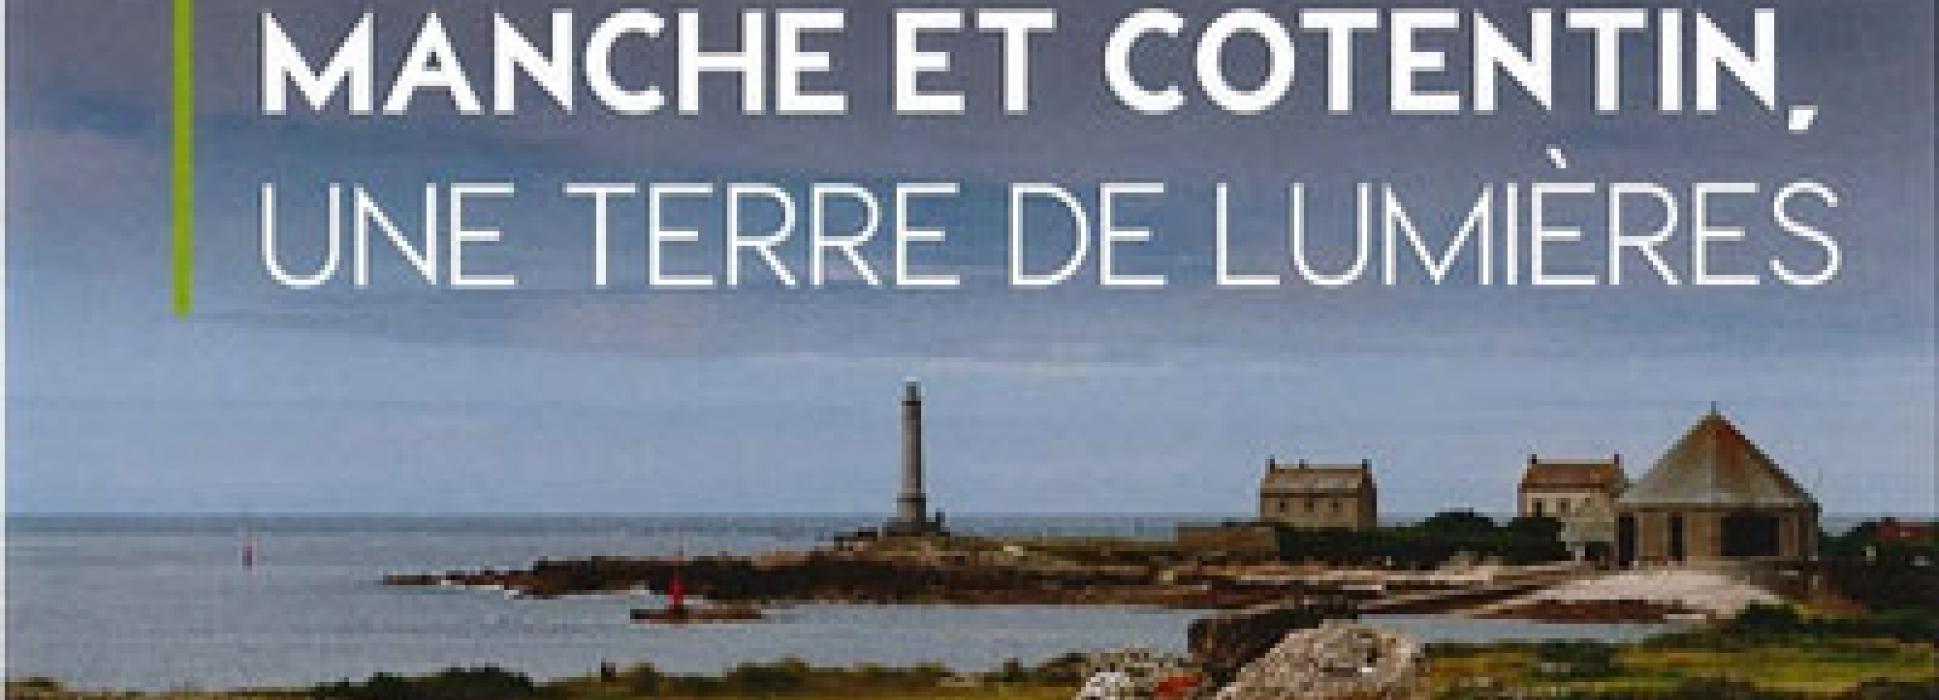 Cherbourg : rendez-vous à l’exposition photo « Manche et Cotentin »